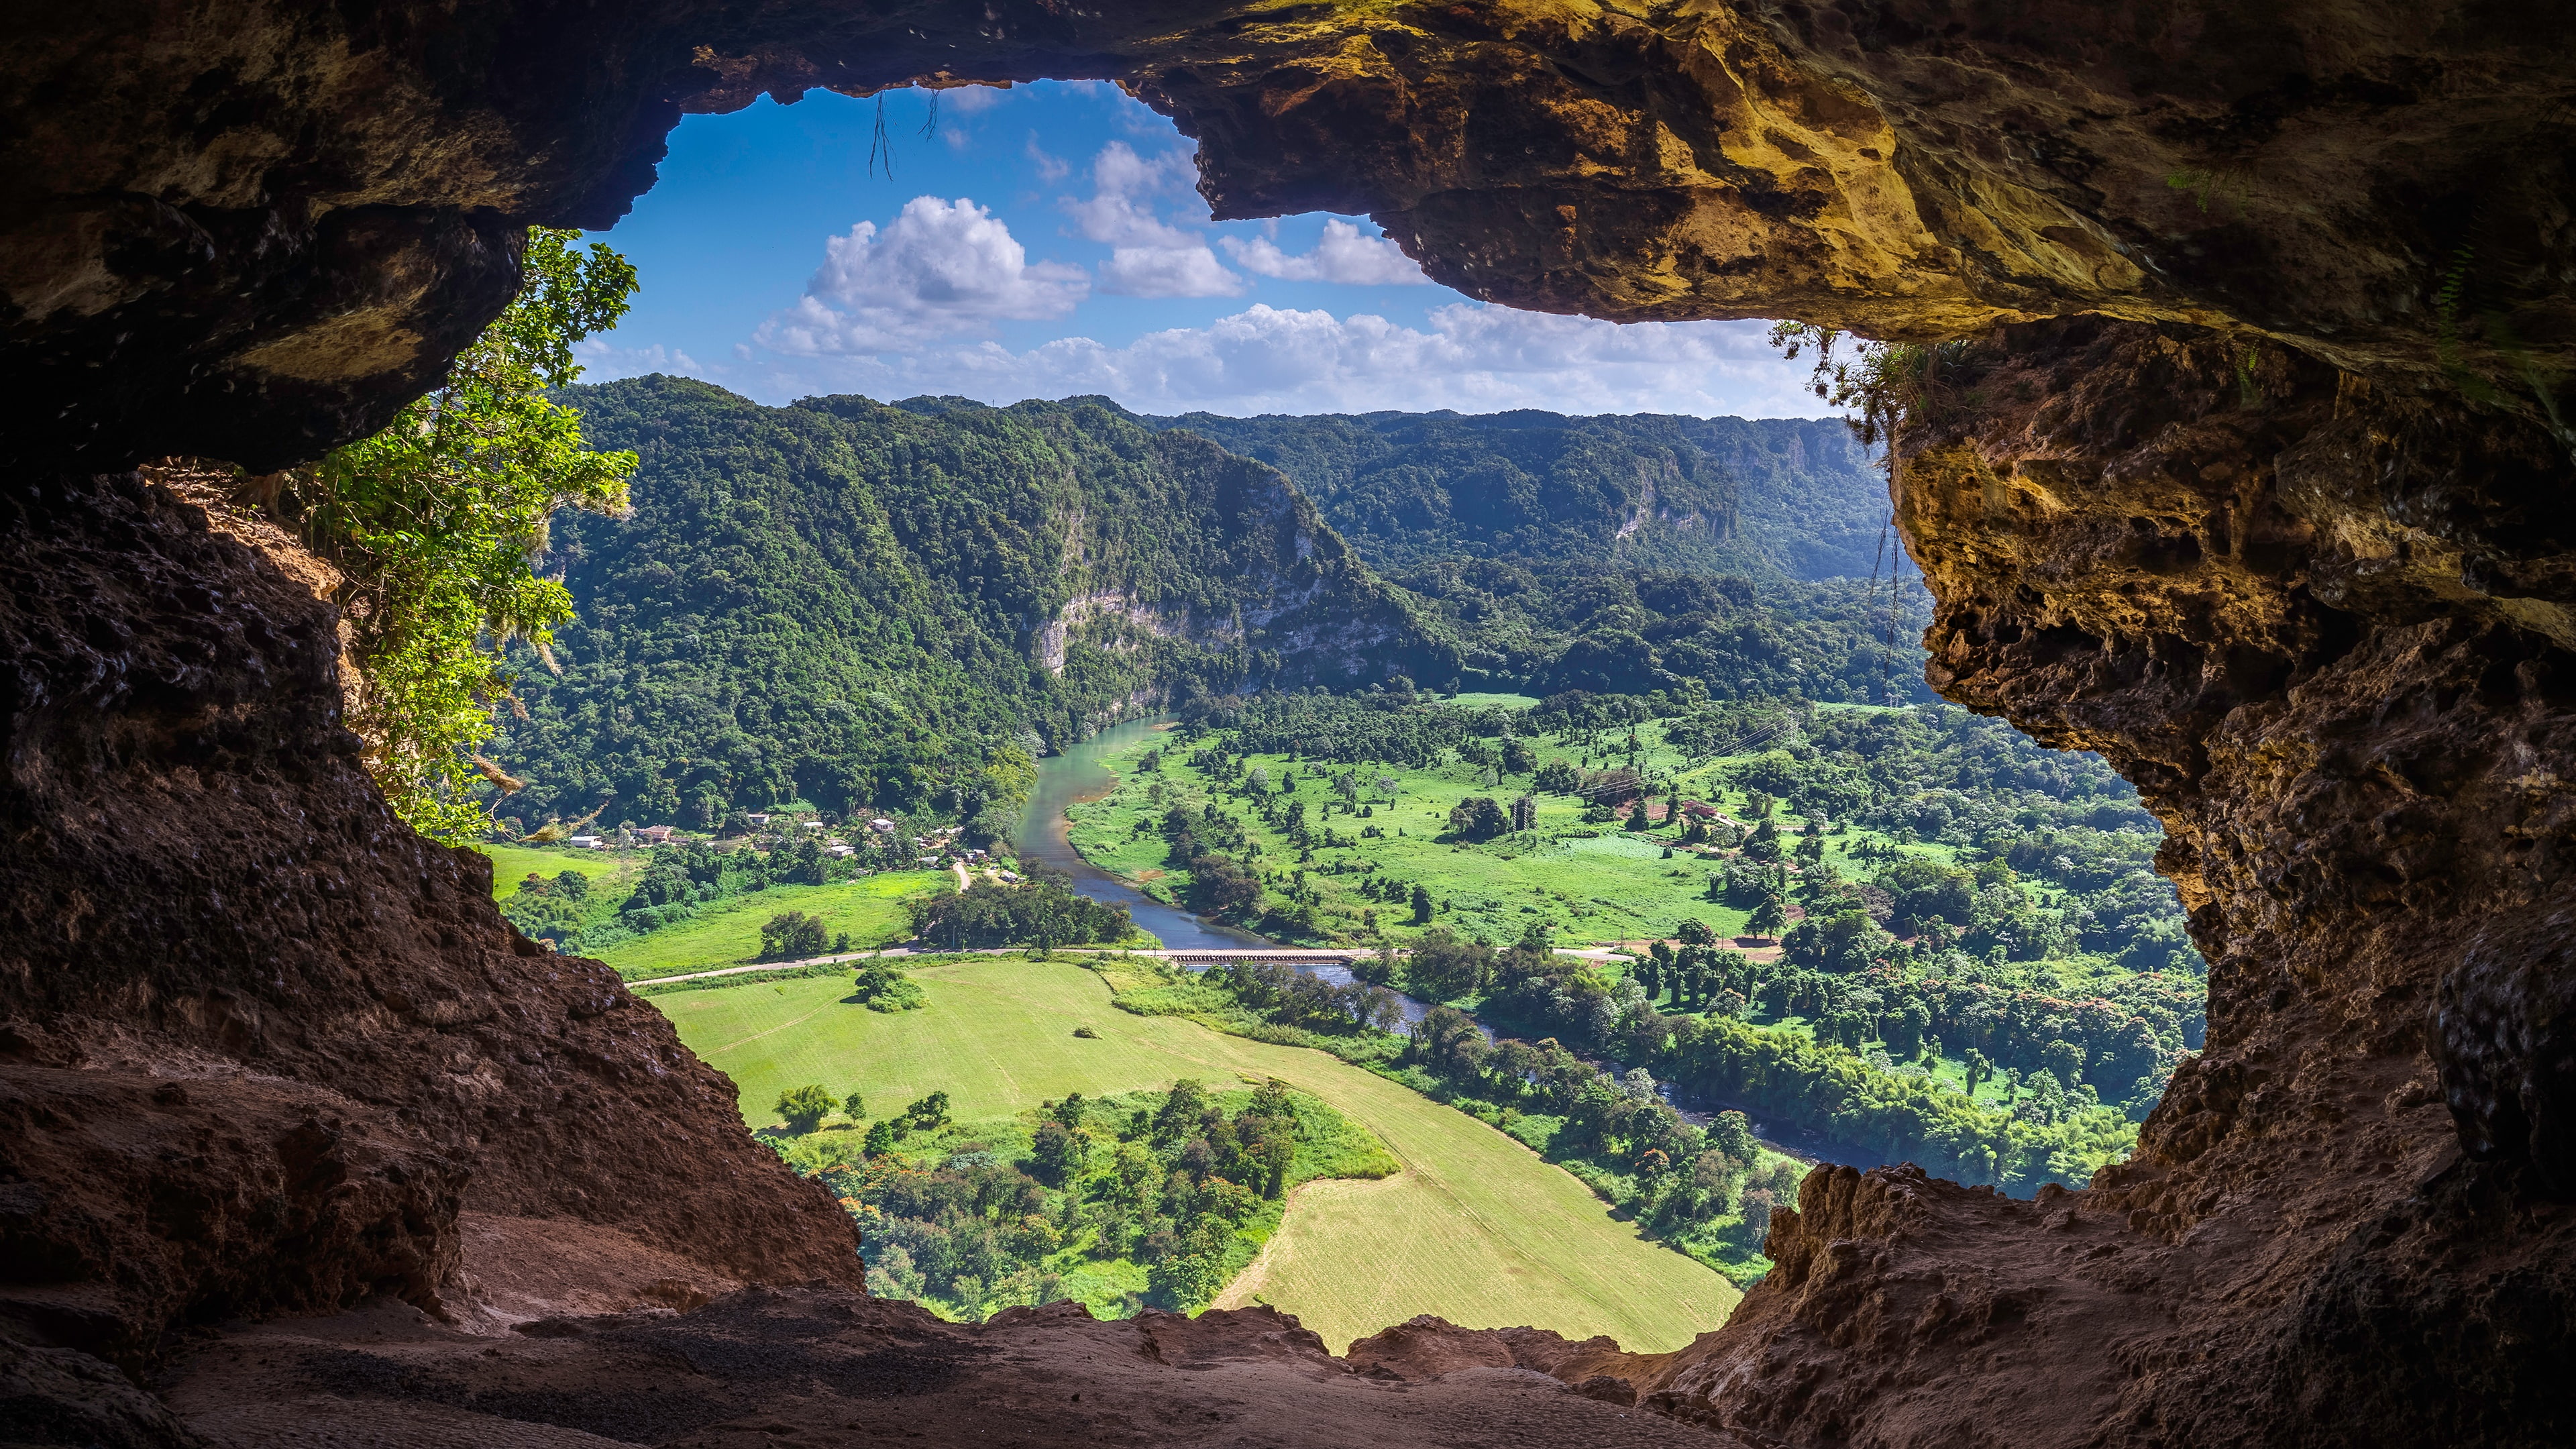 cueva ventana, puerto rico, crag, rock formation, cave, window cave